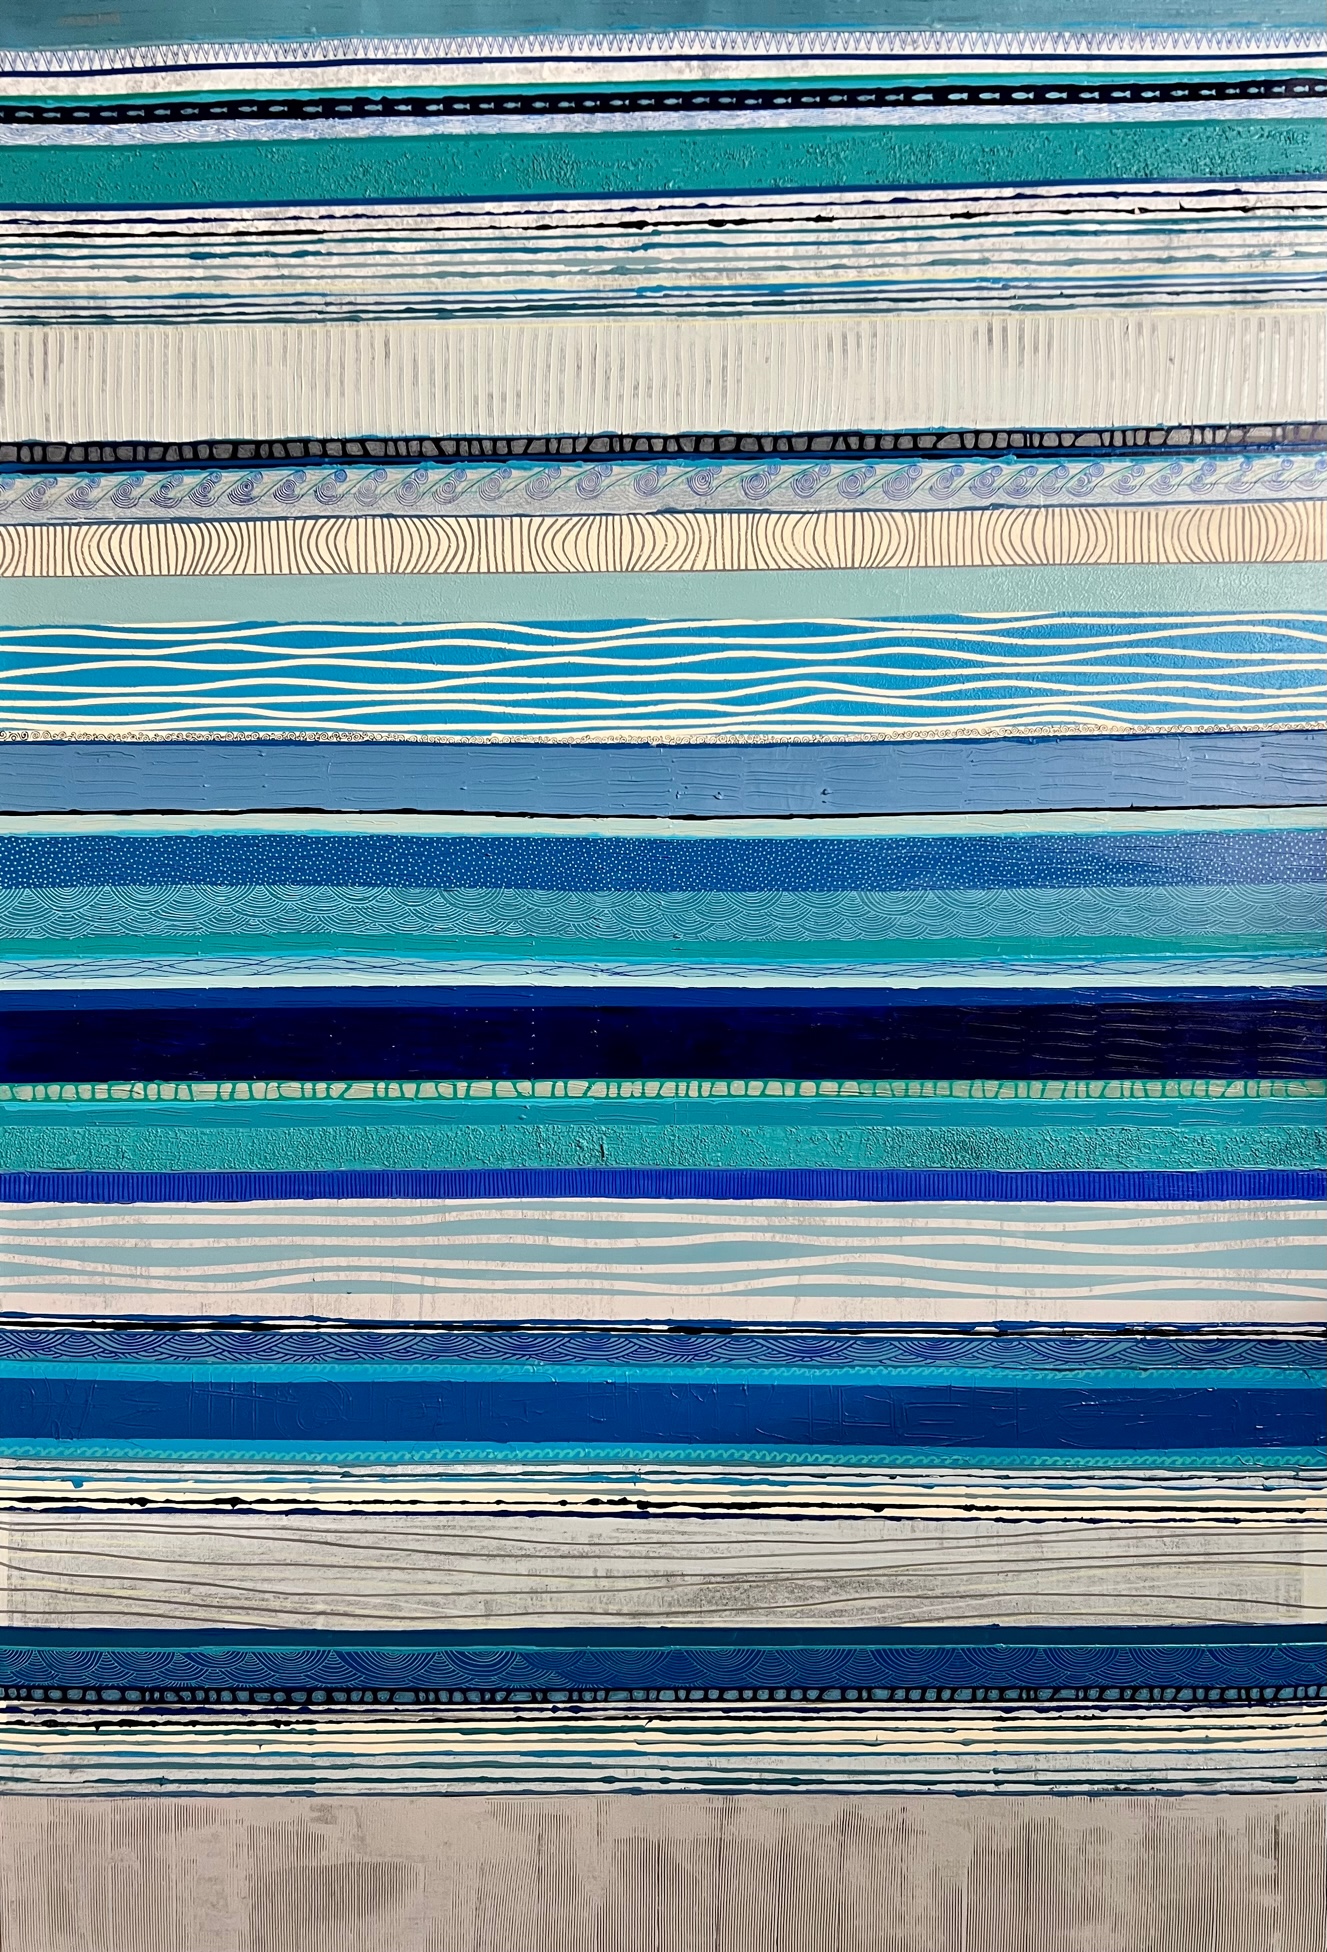 DANIELA ORLANDINI - Blue Fish - Oil on Canvas - 48x72 inches